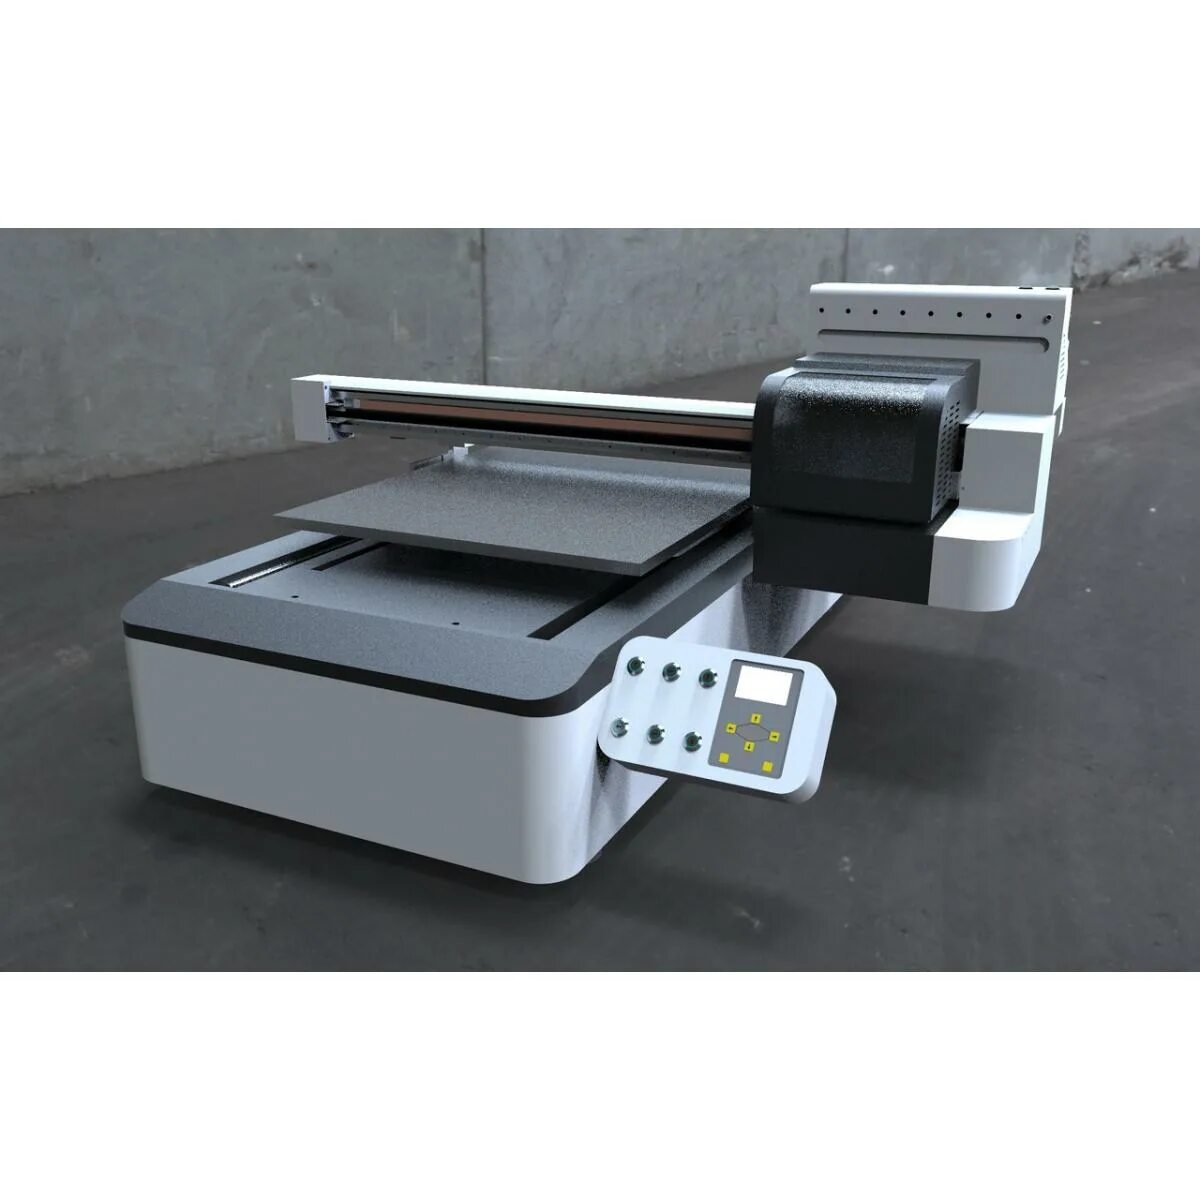 Купить принтер для бизнеса. Планшетный УФ принтер FS-а1uv. УФ принтер FS-4030uv. Принтер HM-uv40. UV Printer 9060g.